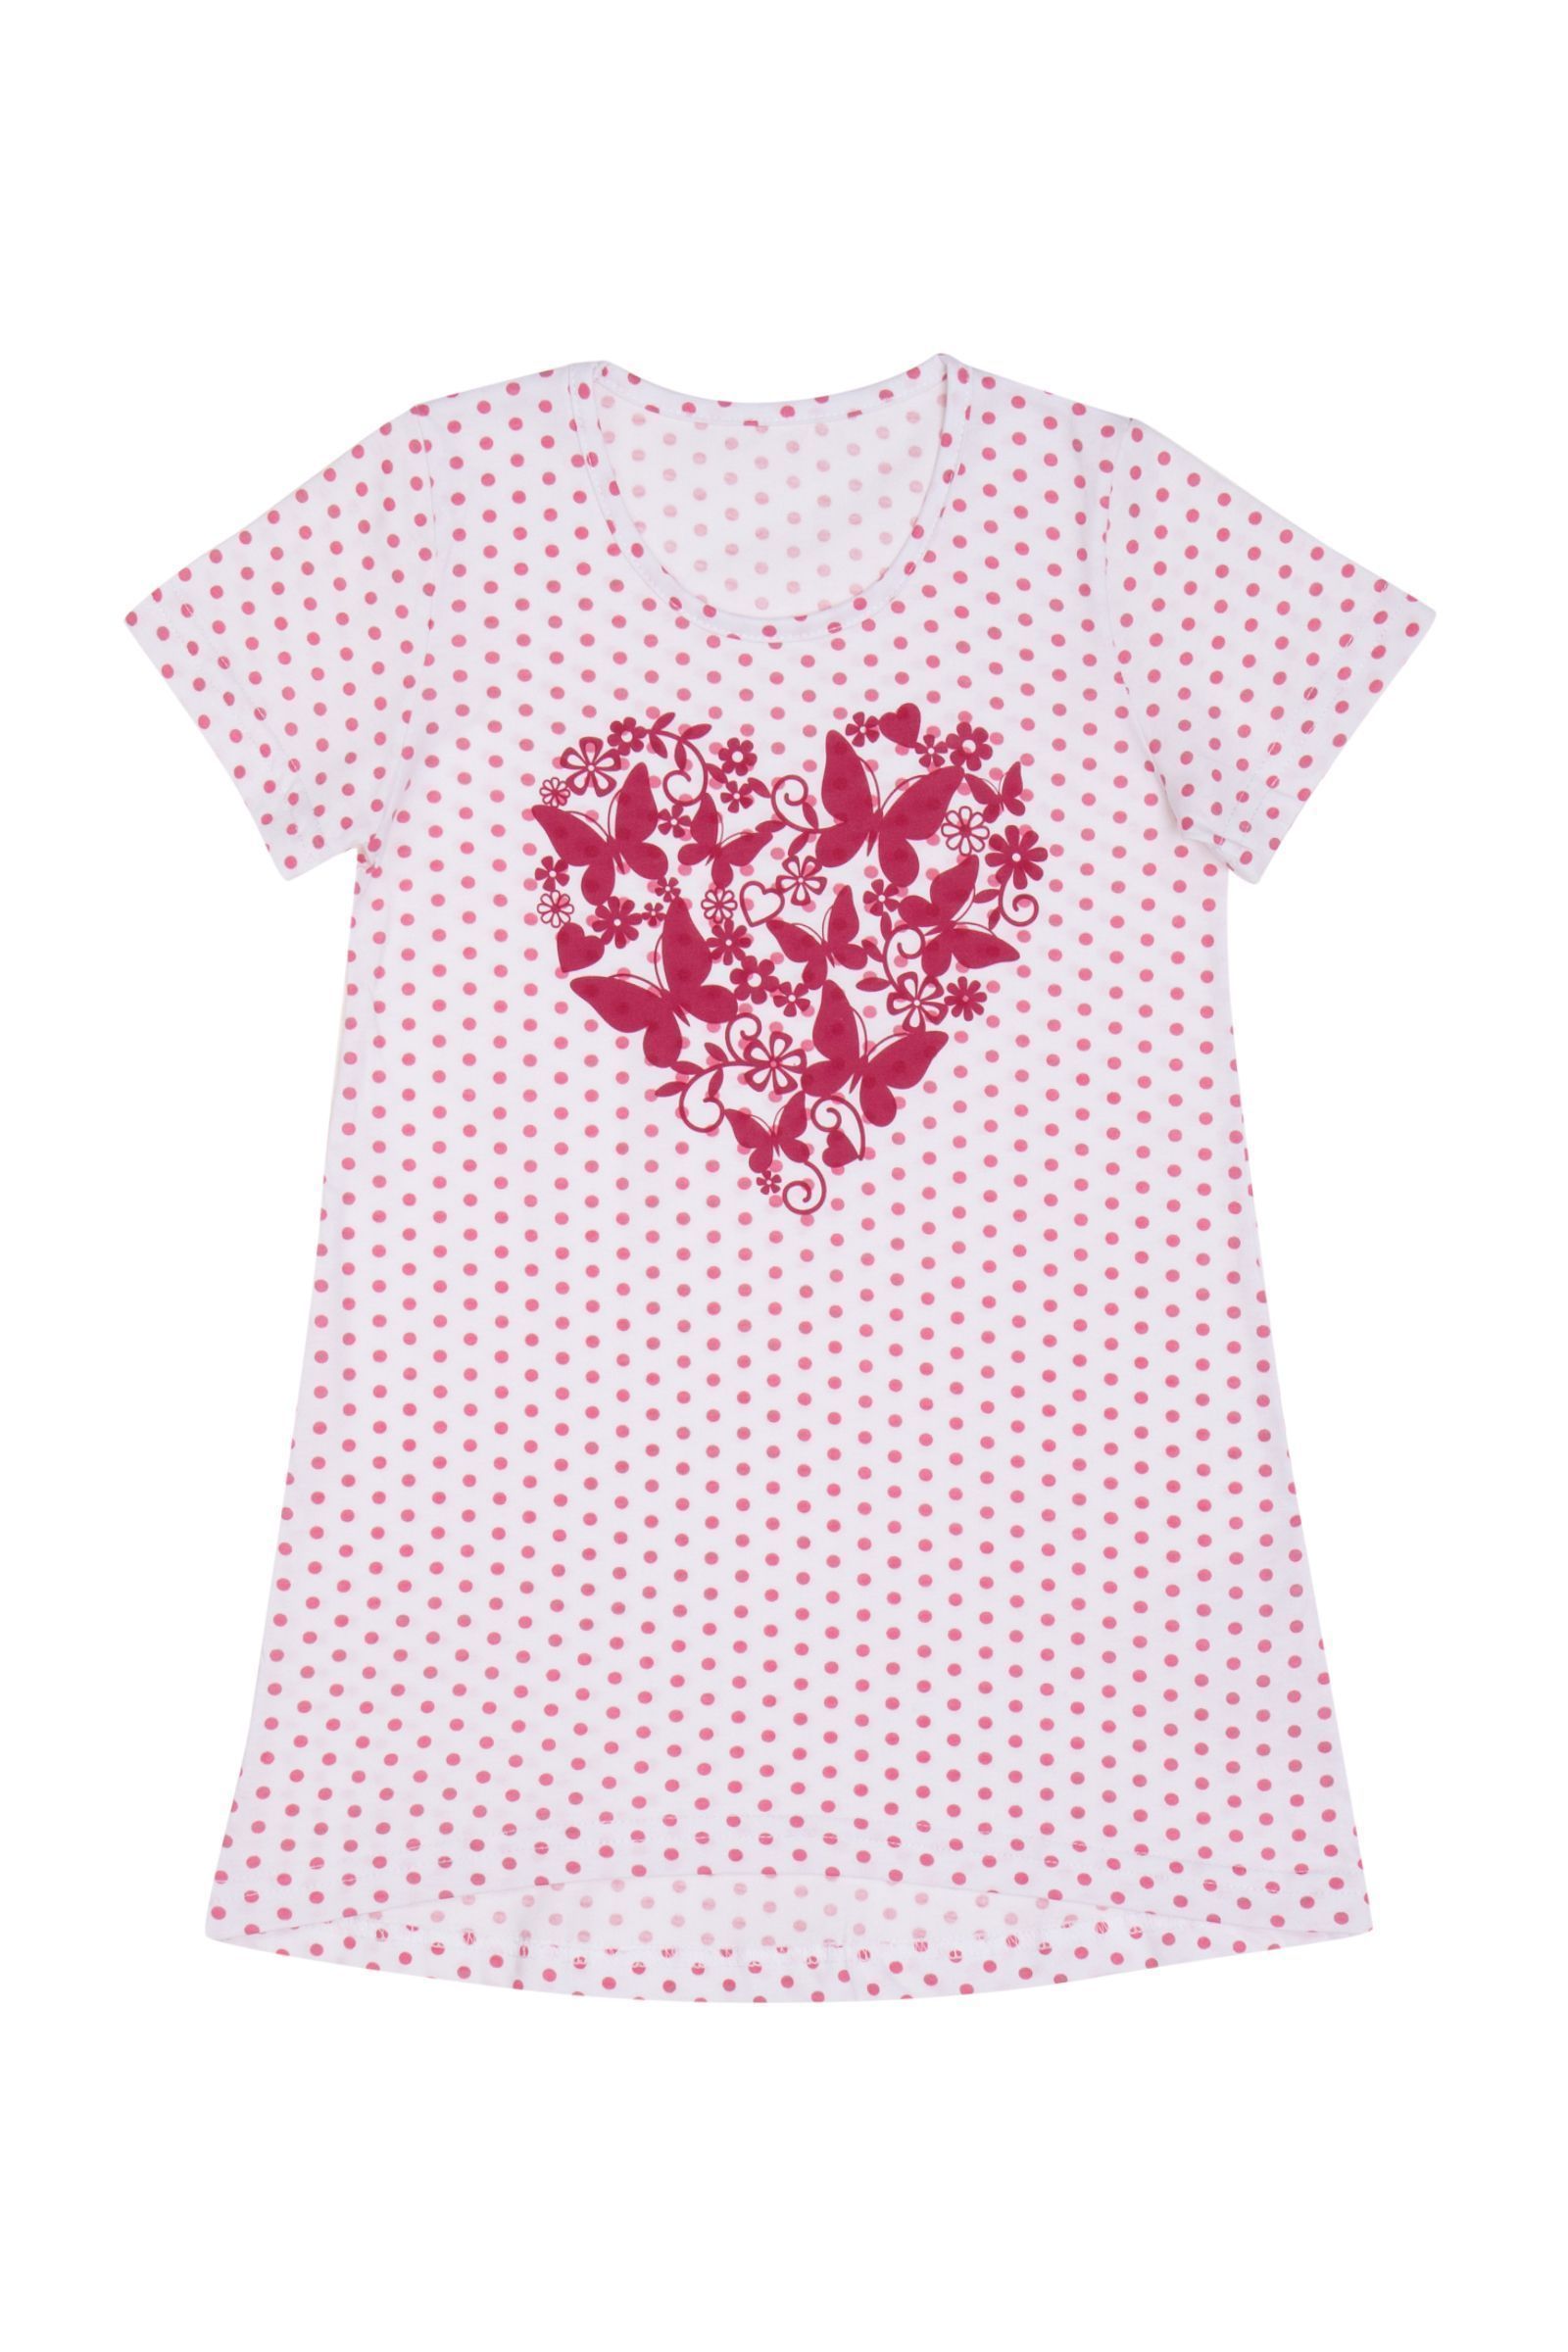 Ночная сорочка-СР02-3107 оптом от производителя детской одежды 'Алёна'